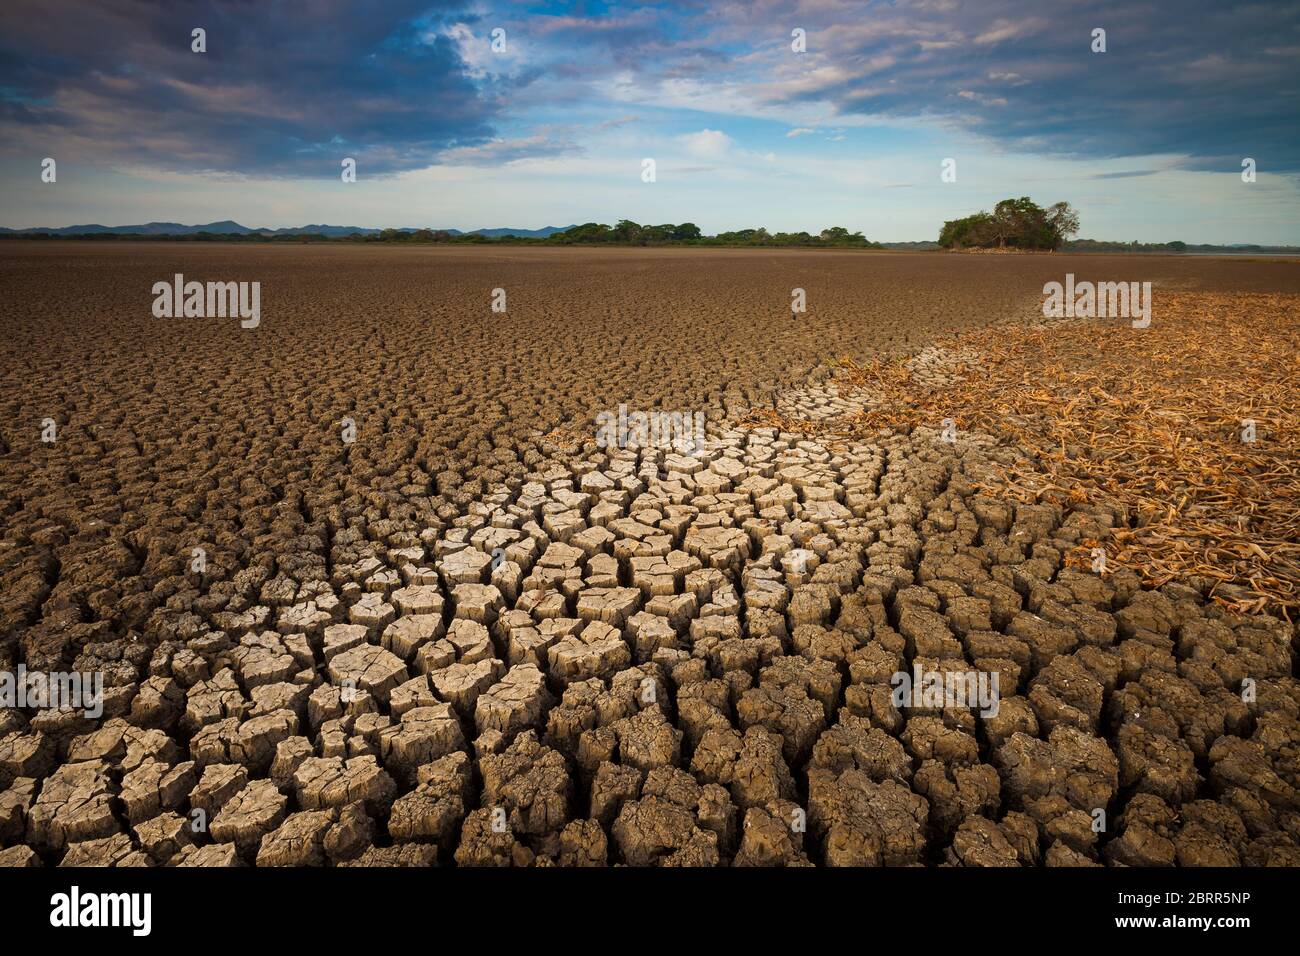 Drought in the lake of Cienaga de las Macanas, El Rincon, Herrera province, Republic of Panama. Stock Photo